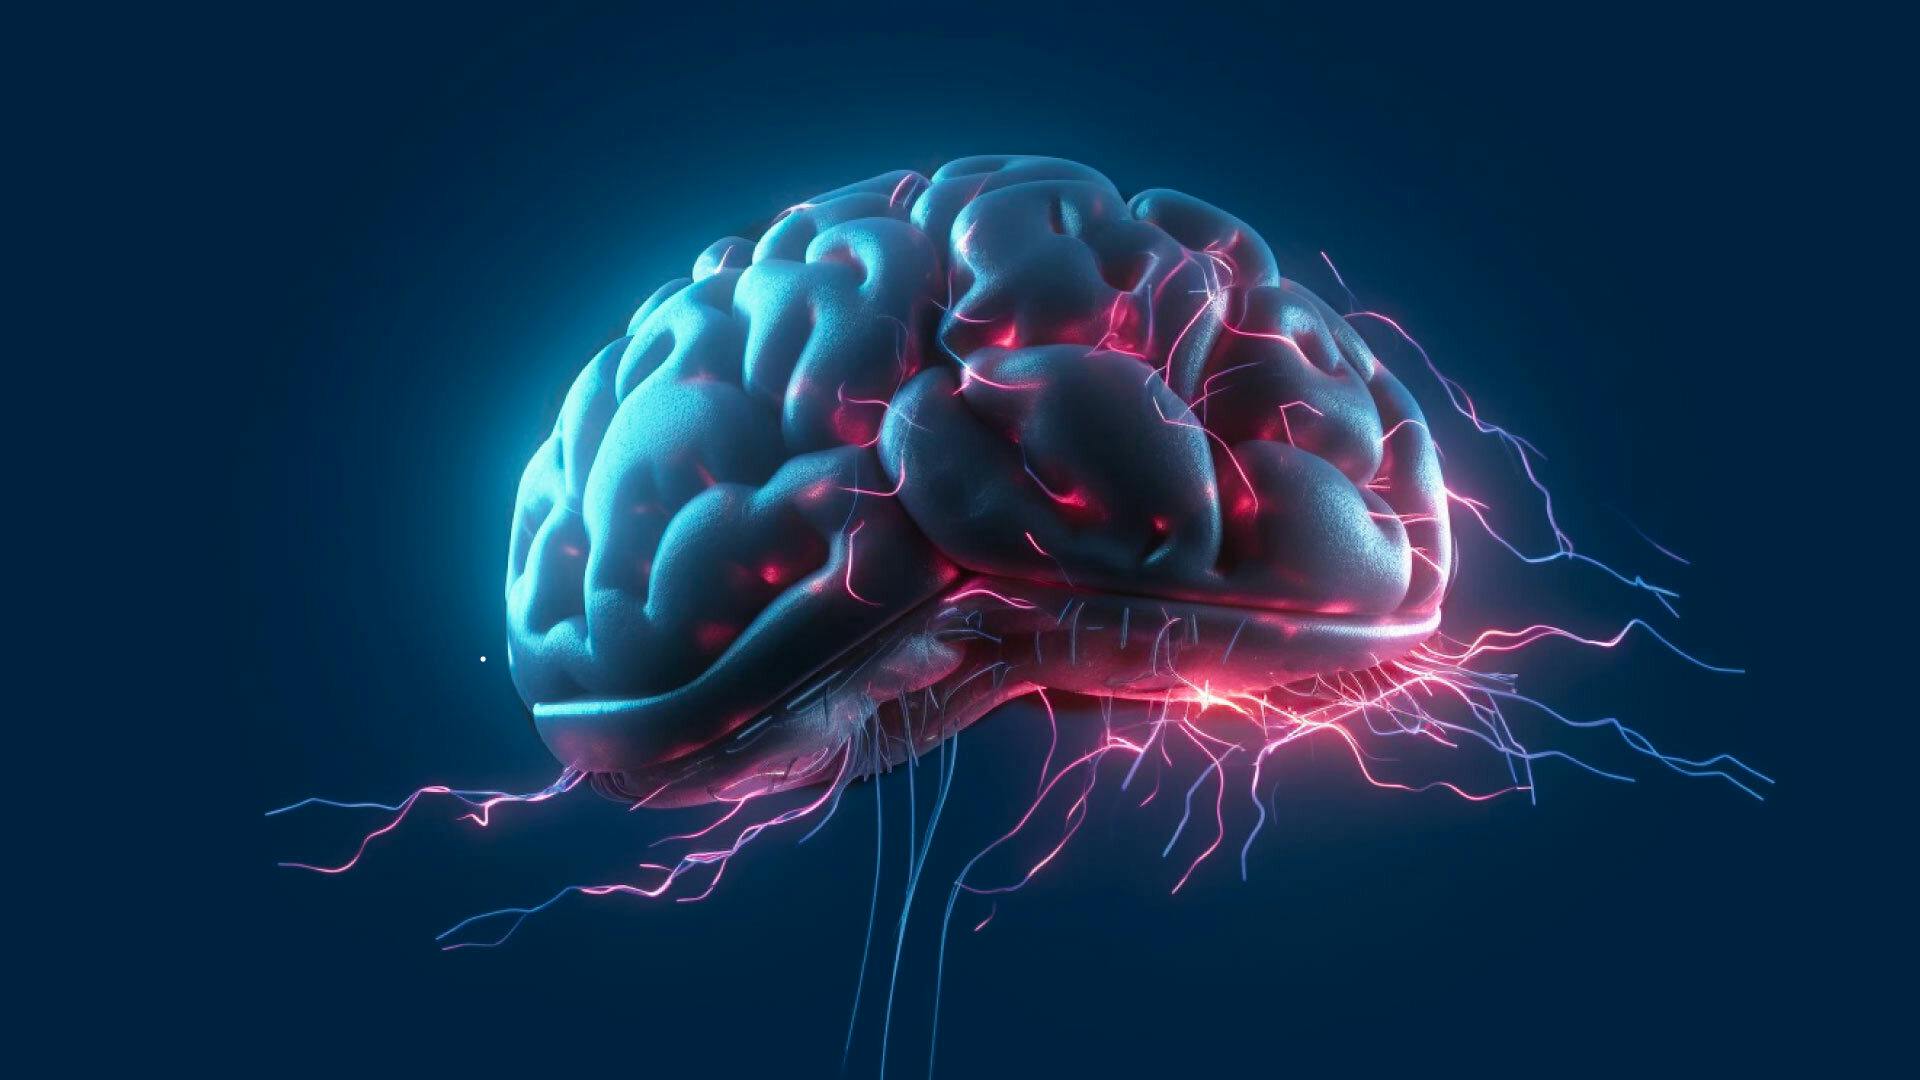 Rappresentazione artistica di un cervello con impulsi elettrici, simbolo di AI e biocomputing relative all'intelligenza organoide